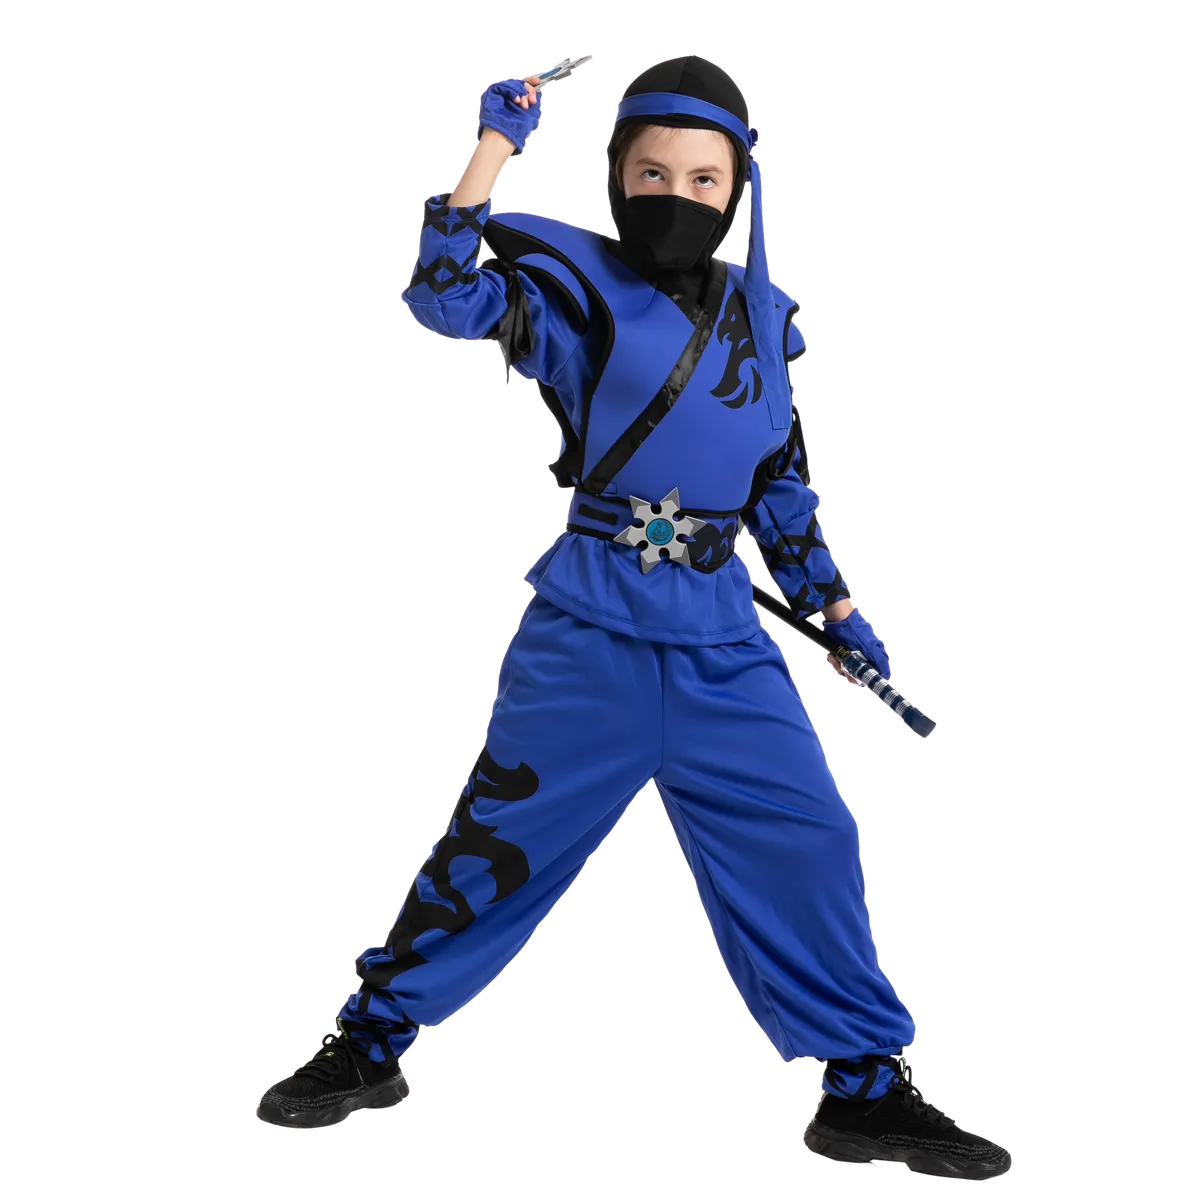 https://www.joyfy.com/wp-content/uploads/2022/04/Boys-Blue-Ninja-Halloween-Costume-2_result.webp